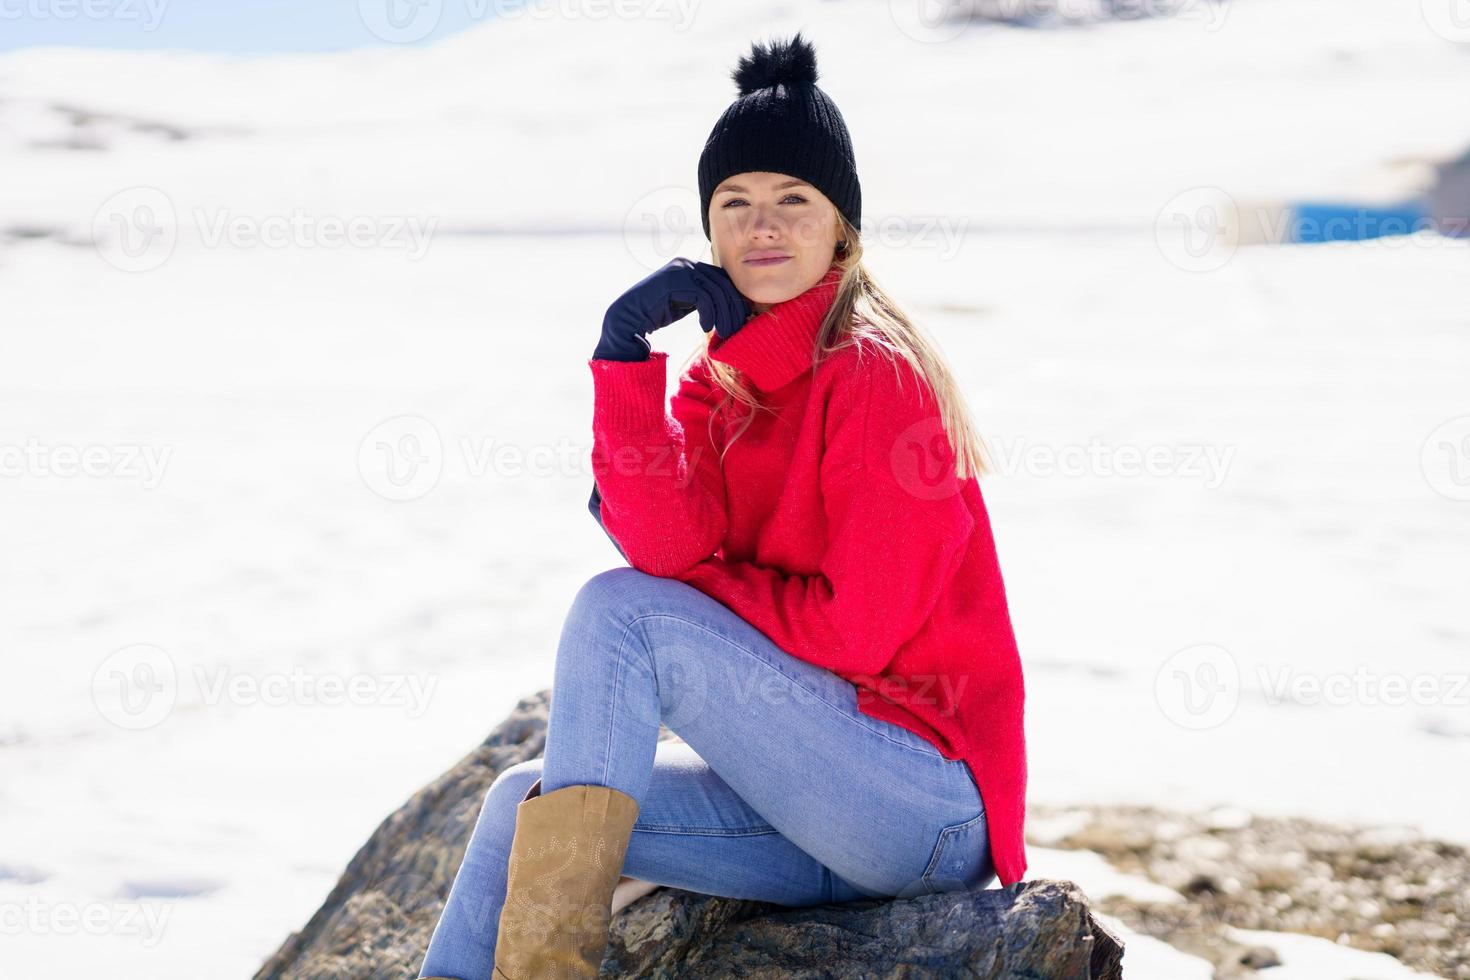 giovane donna seduta su una roccia nelle montagne innevate in inverno, in sierra nevada, granada, spagna. foto